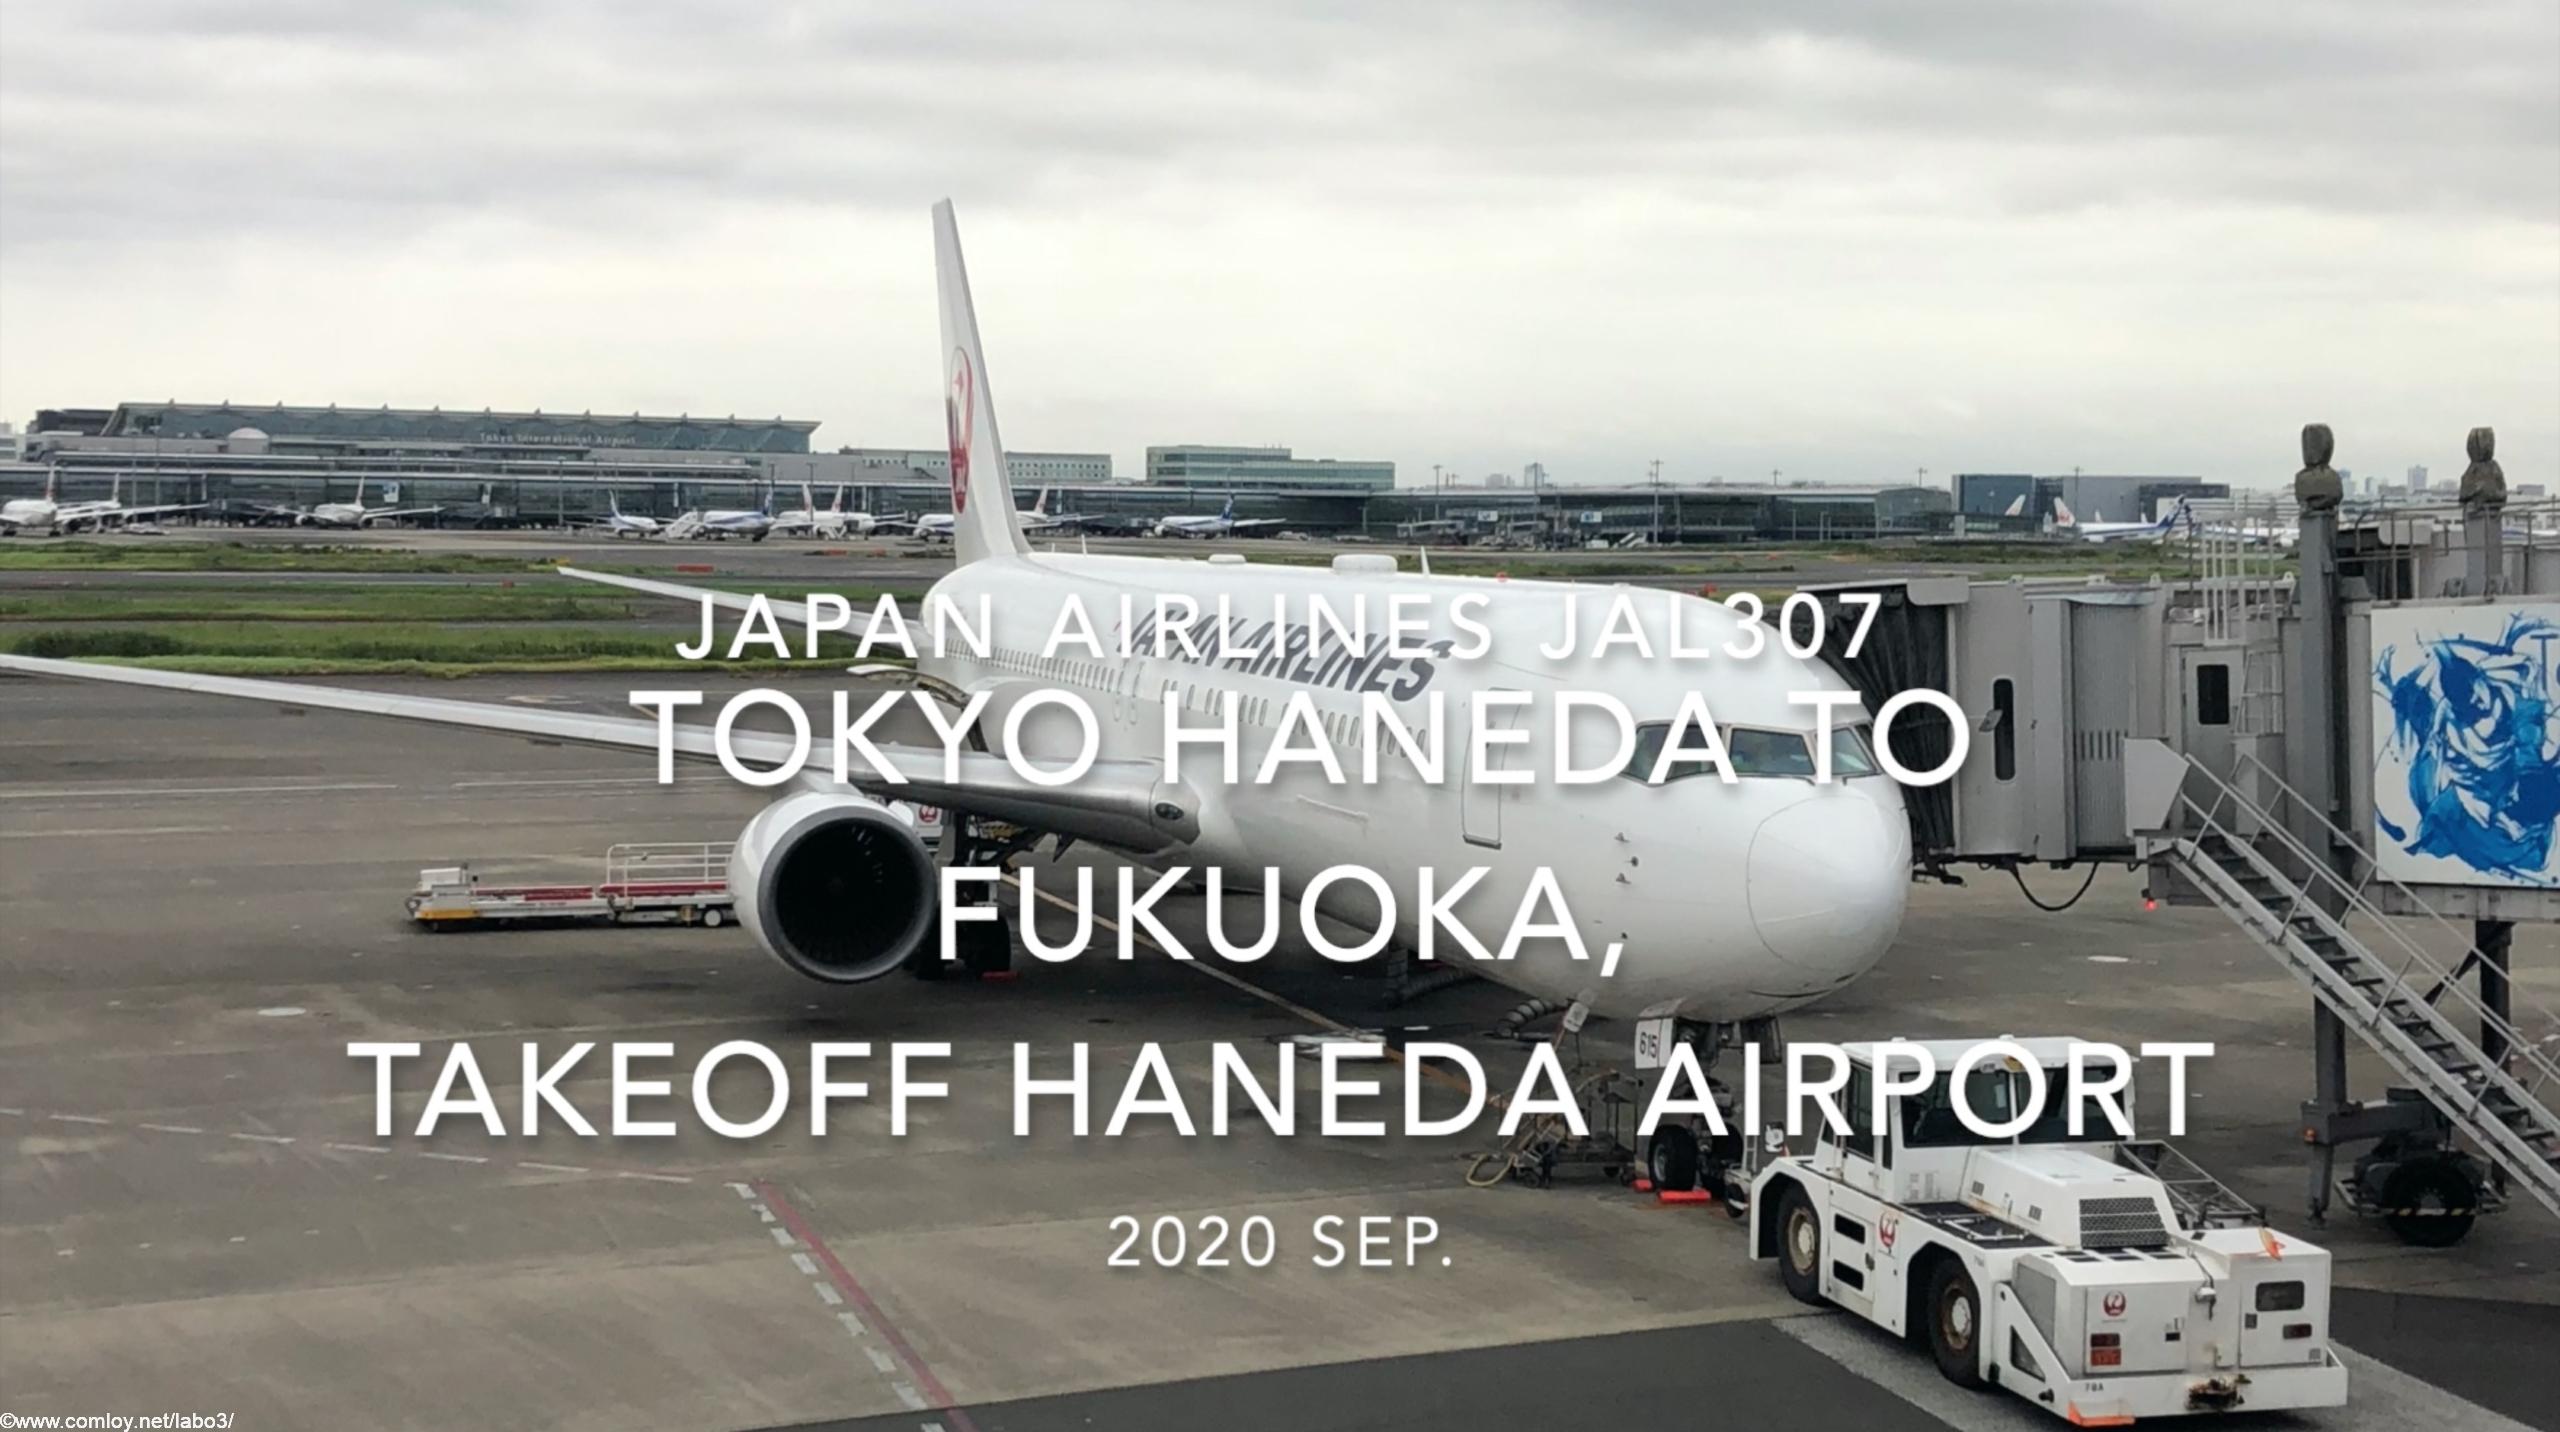 【機内から離着陸映像】2020 Sep JAPAN AIRLINES JAL307 TOKYO HANEDA to FUKUOKA, Takeoff HANEDA Airport